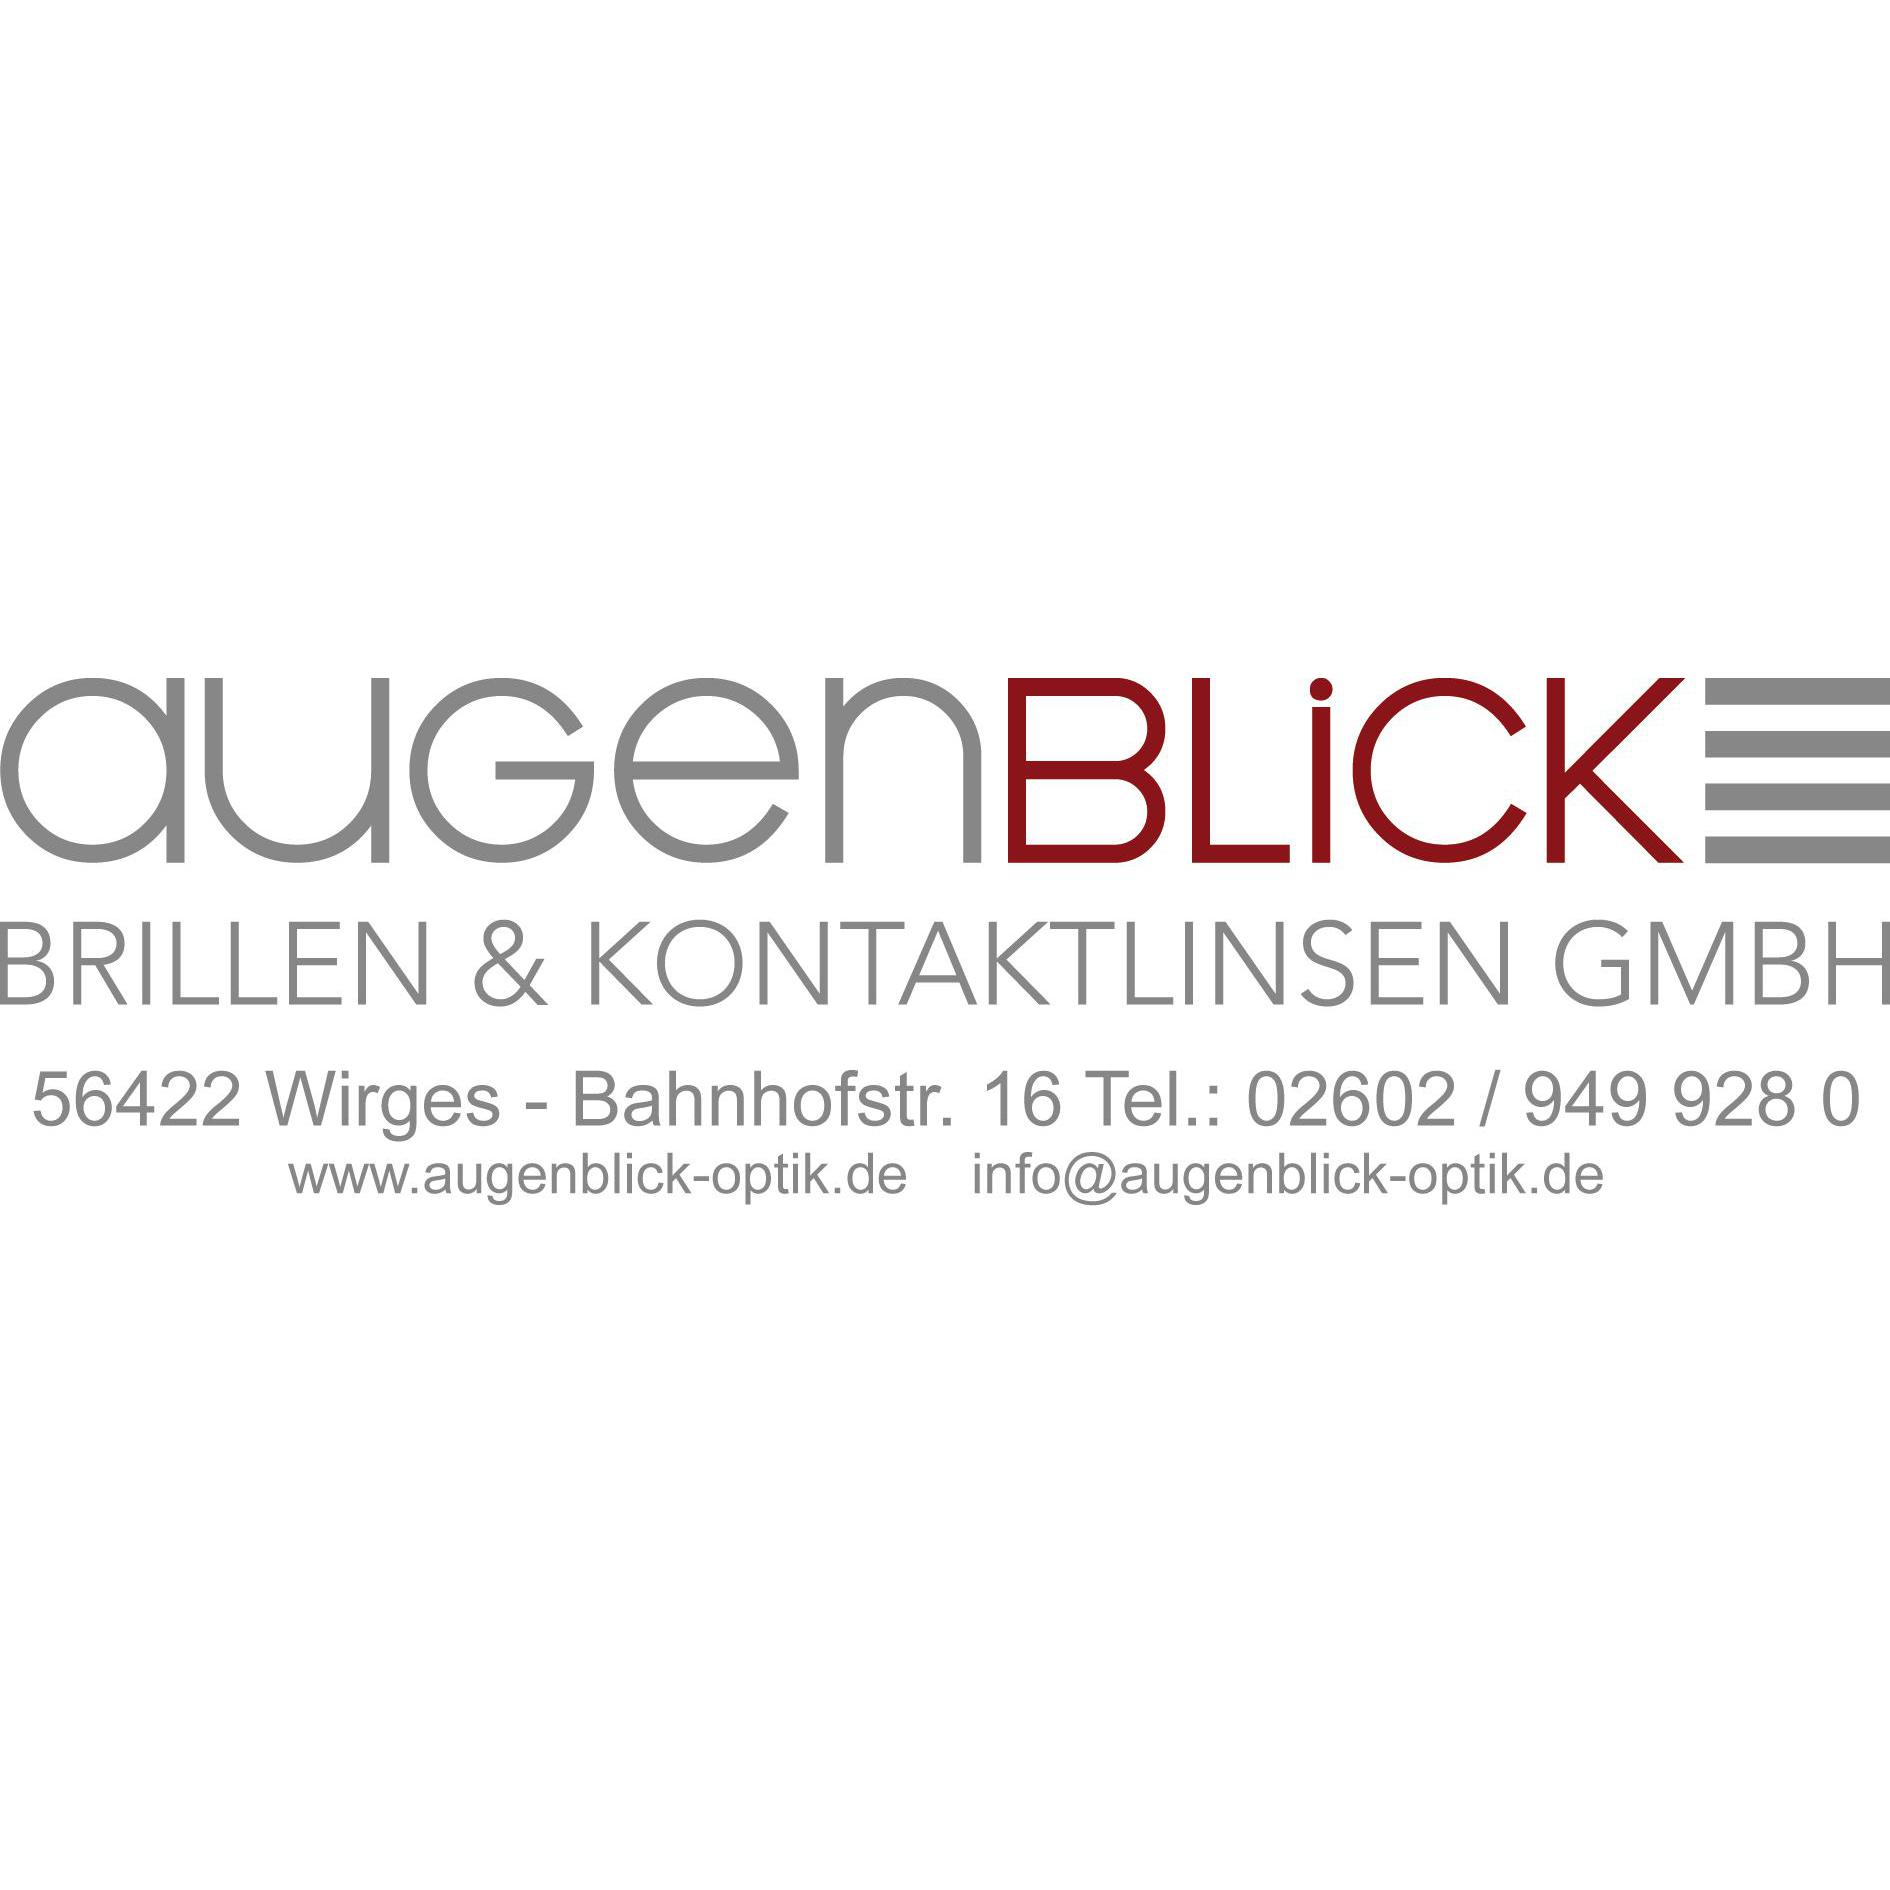 Logo von Augenblick Brillen Kontaktlinsen GmbH